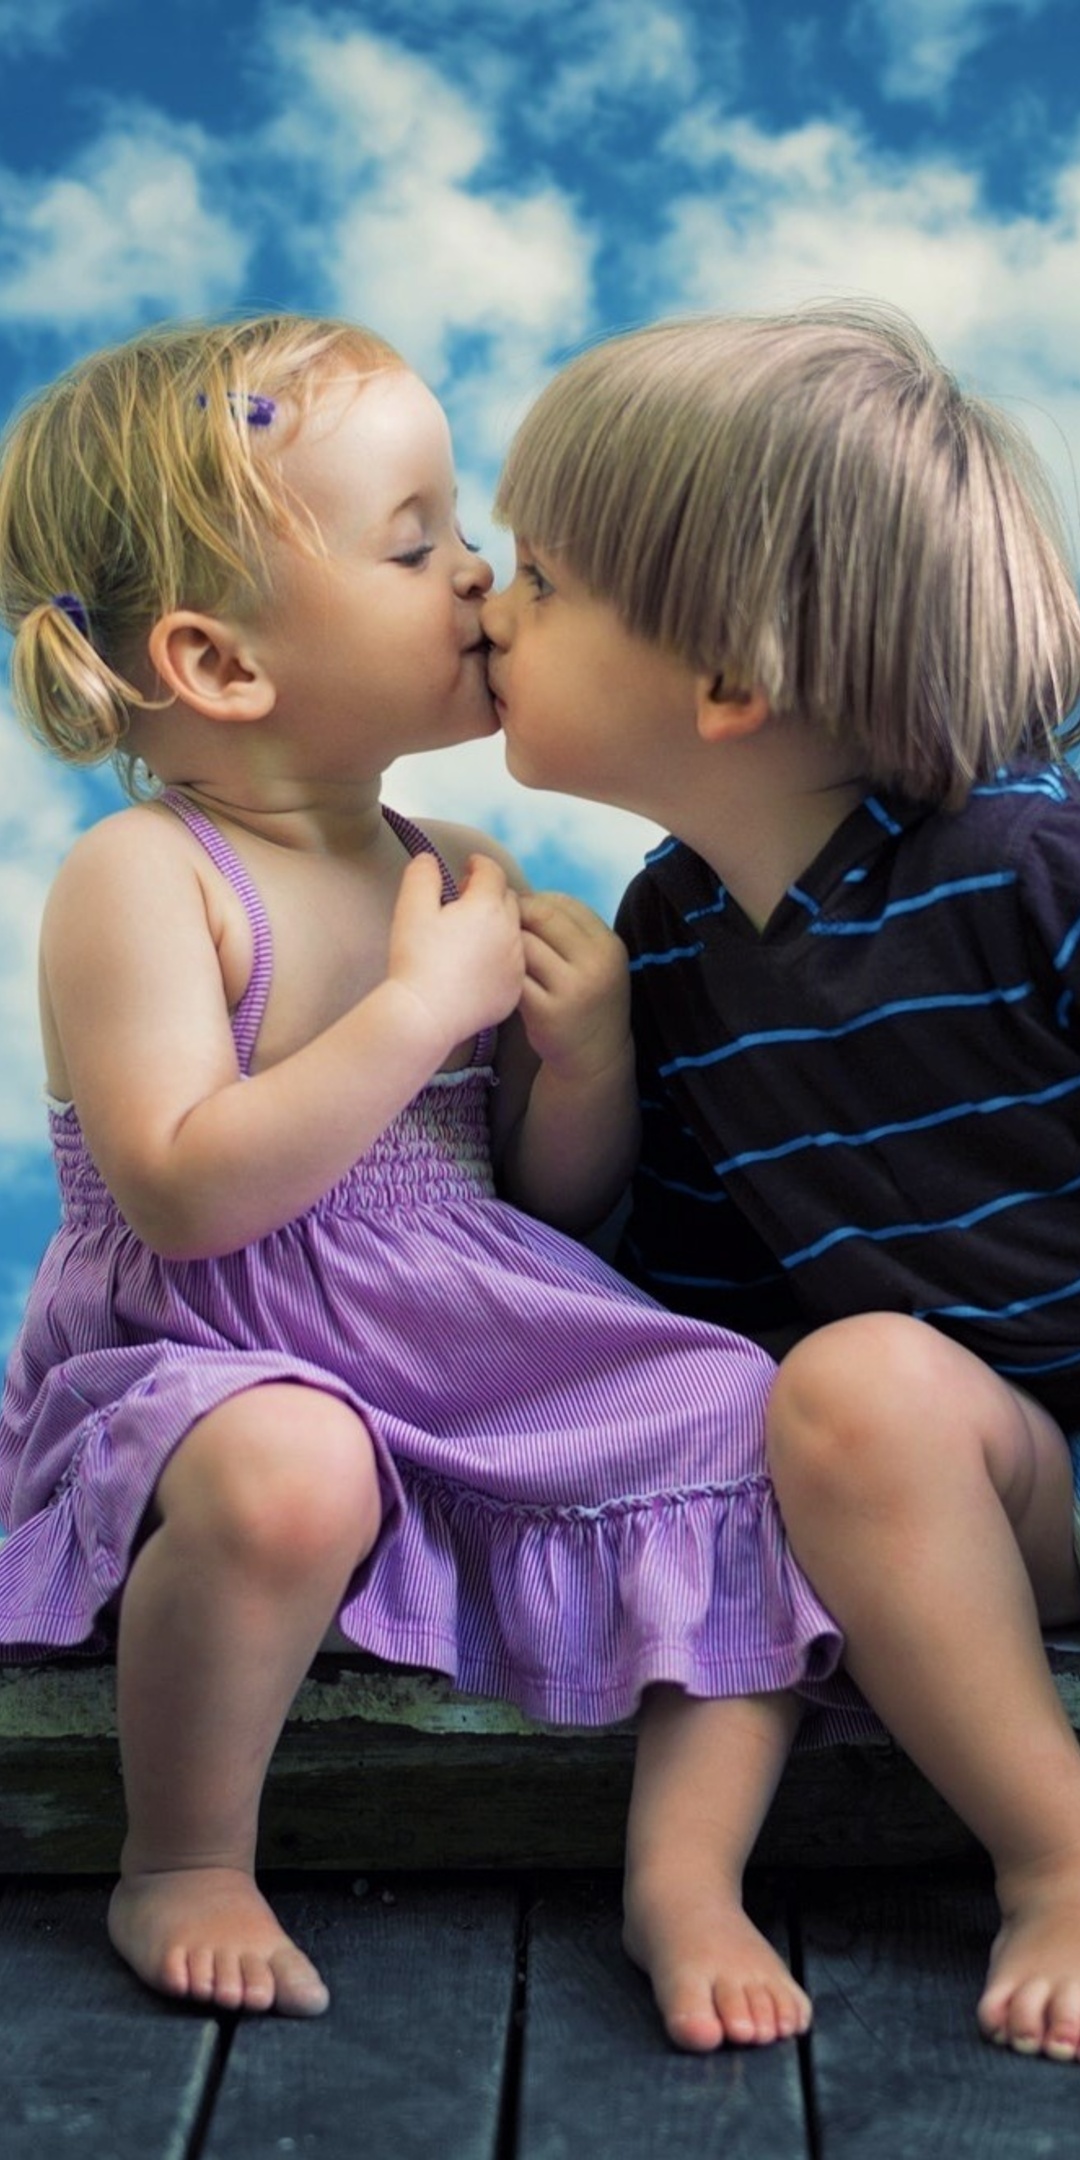 little-boy-little-girl-cute-kiss-oe.jpg